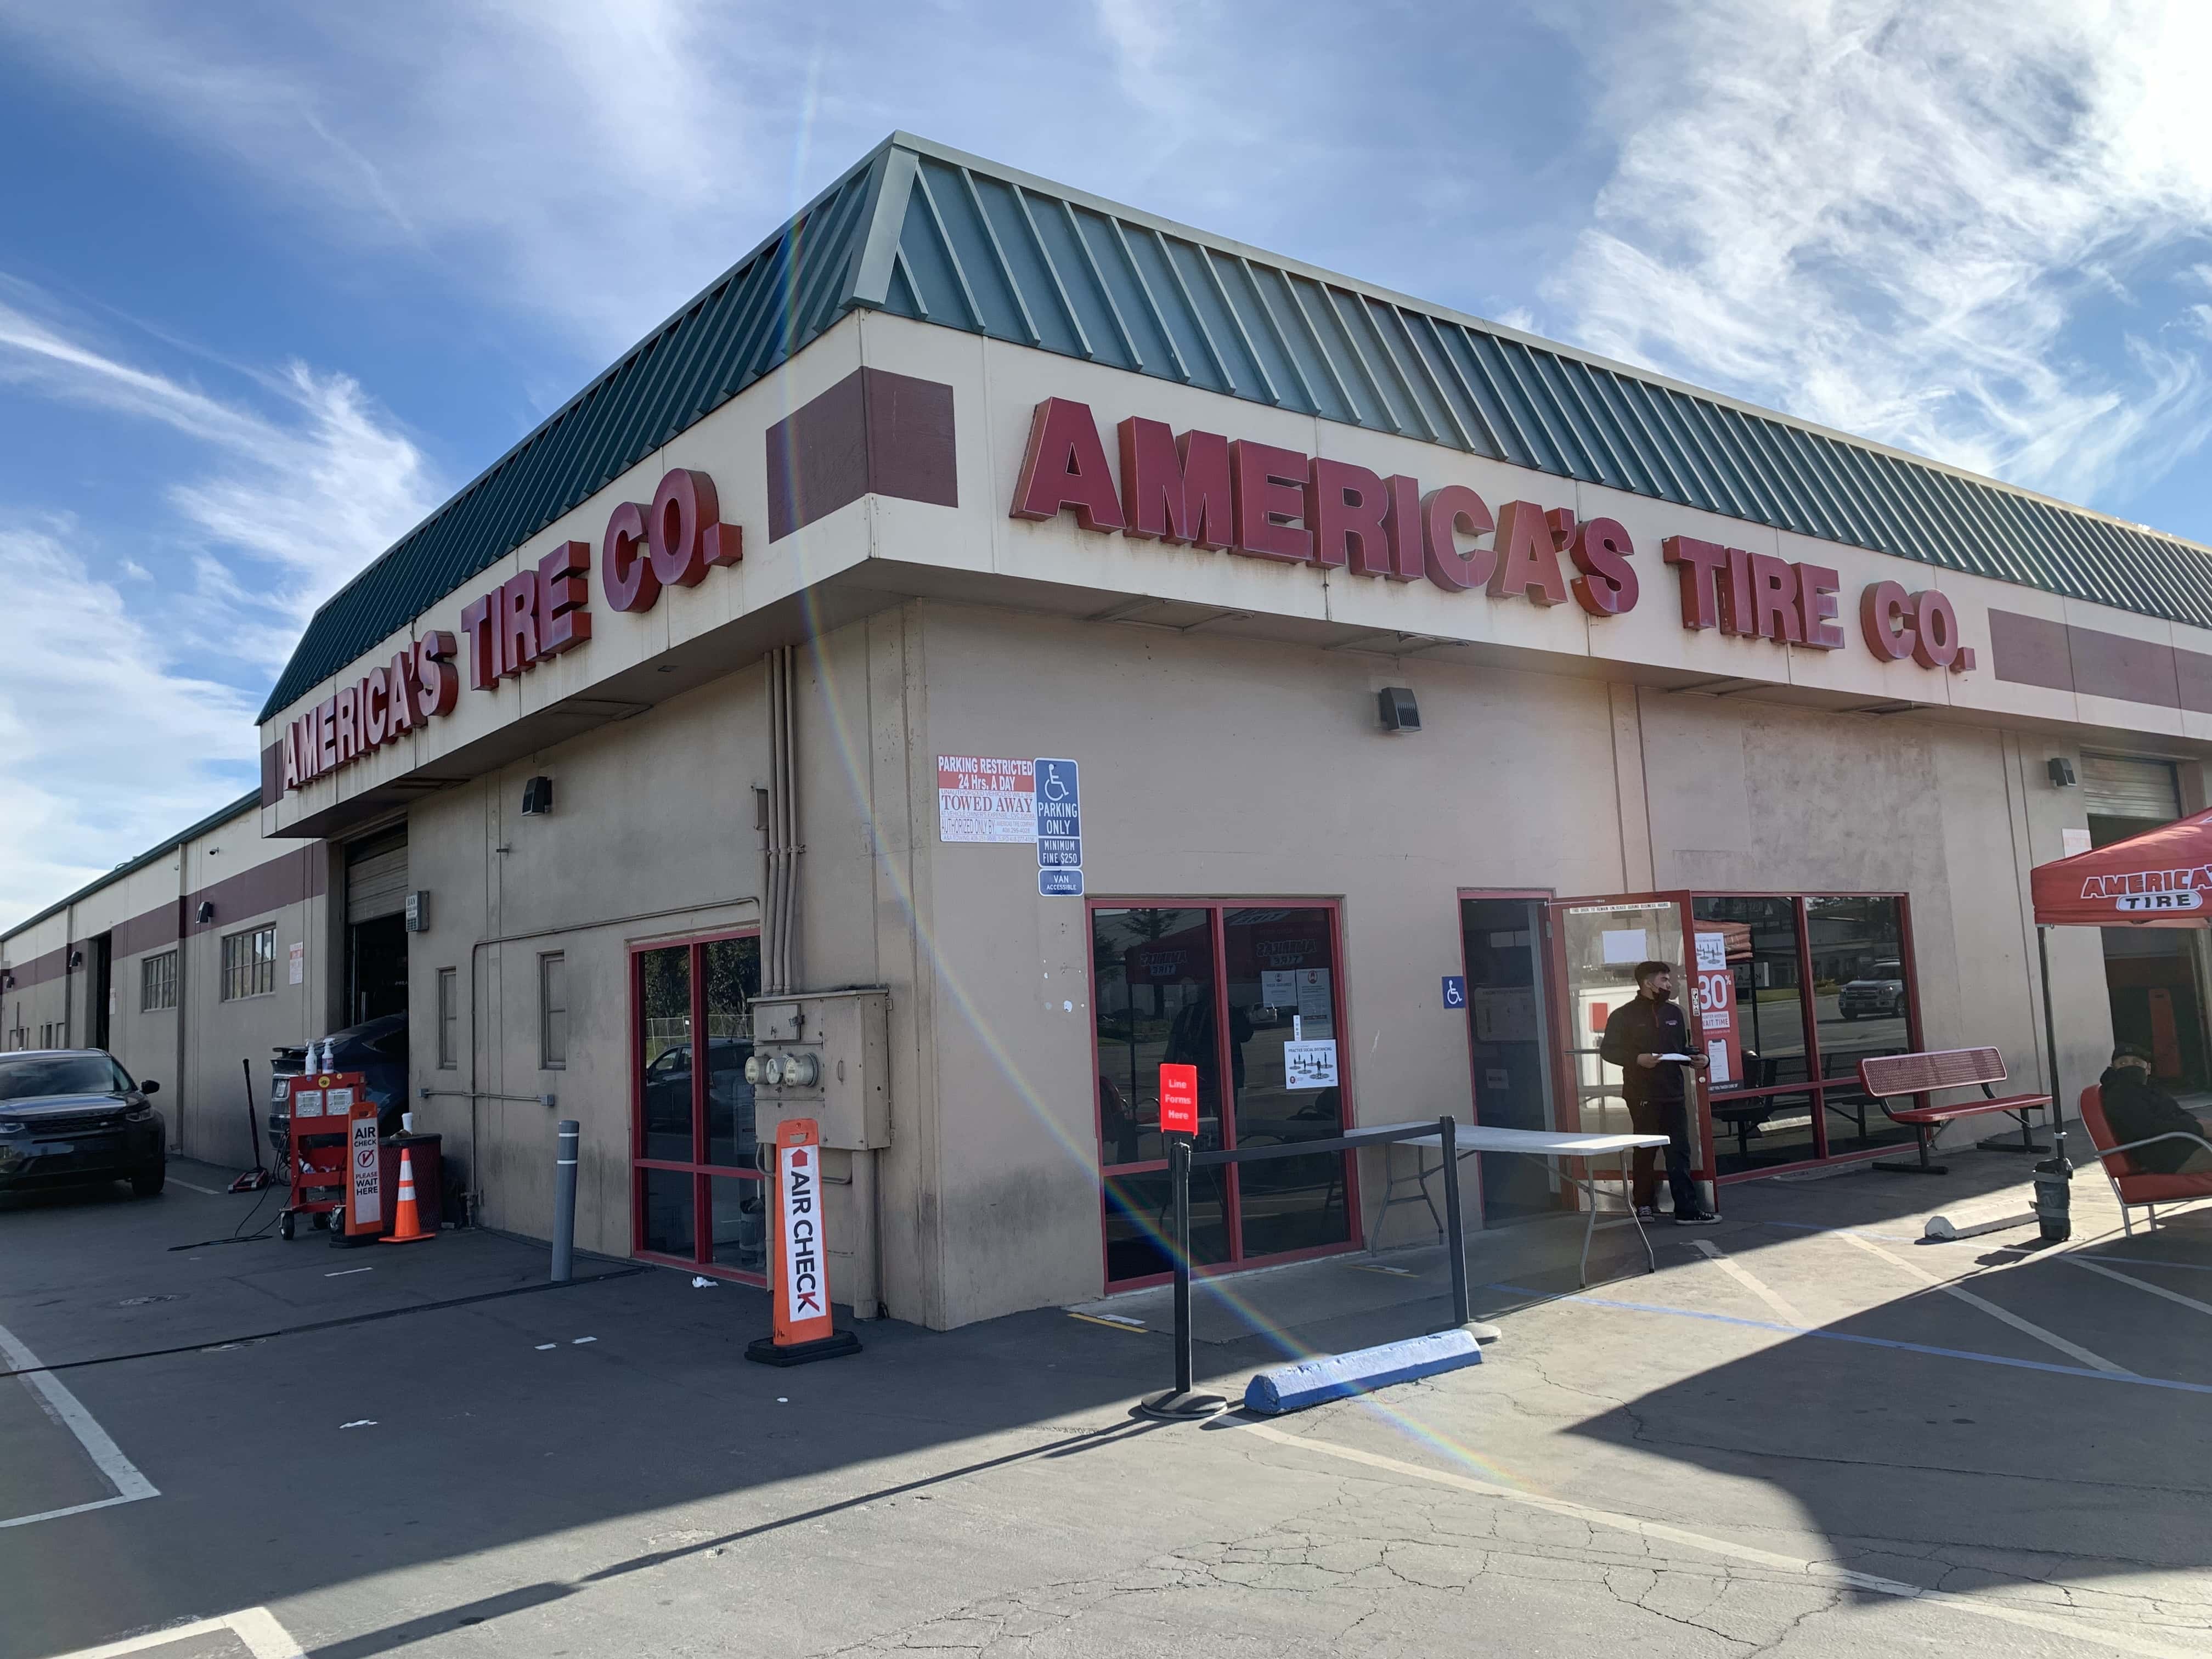 America’s Tire - San Jose (CA 95112), US, wheel alignment services